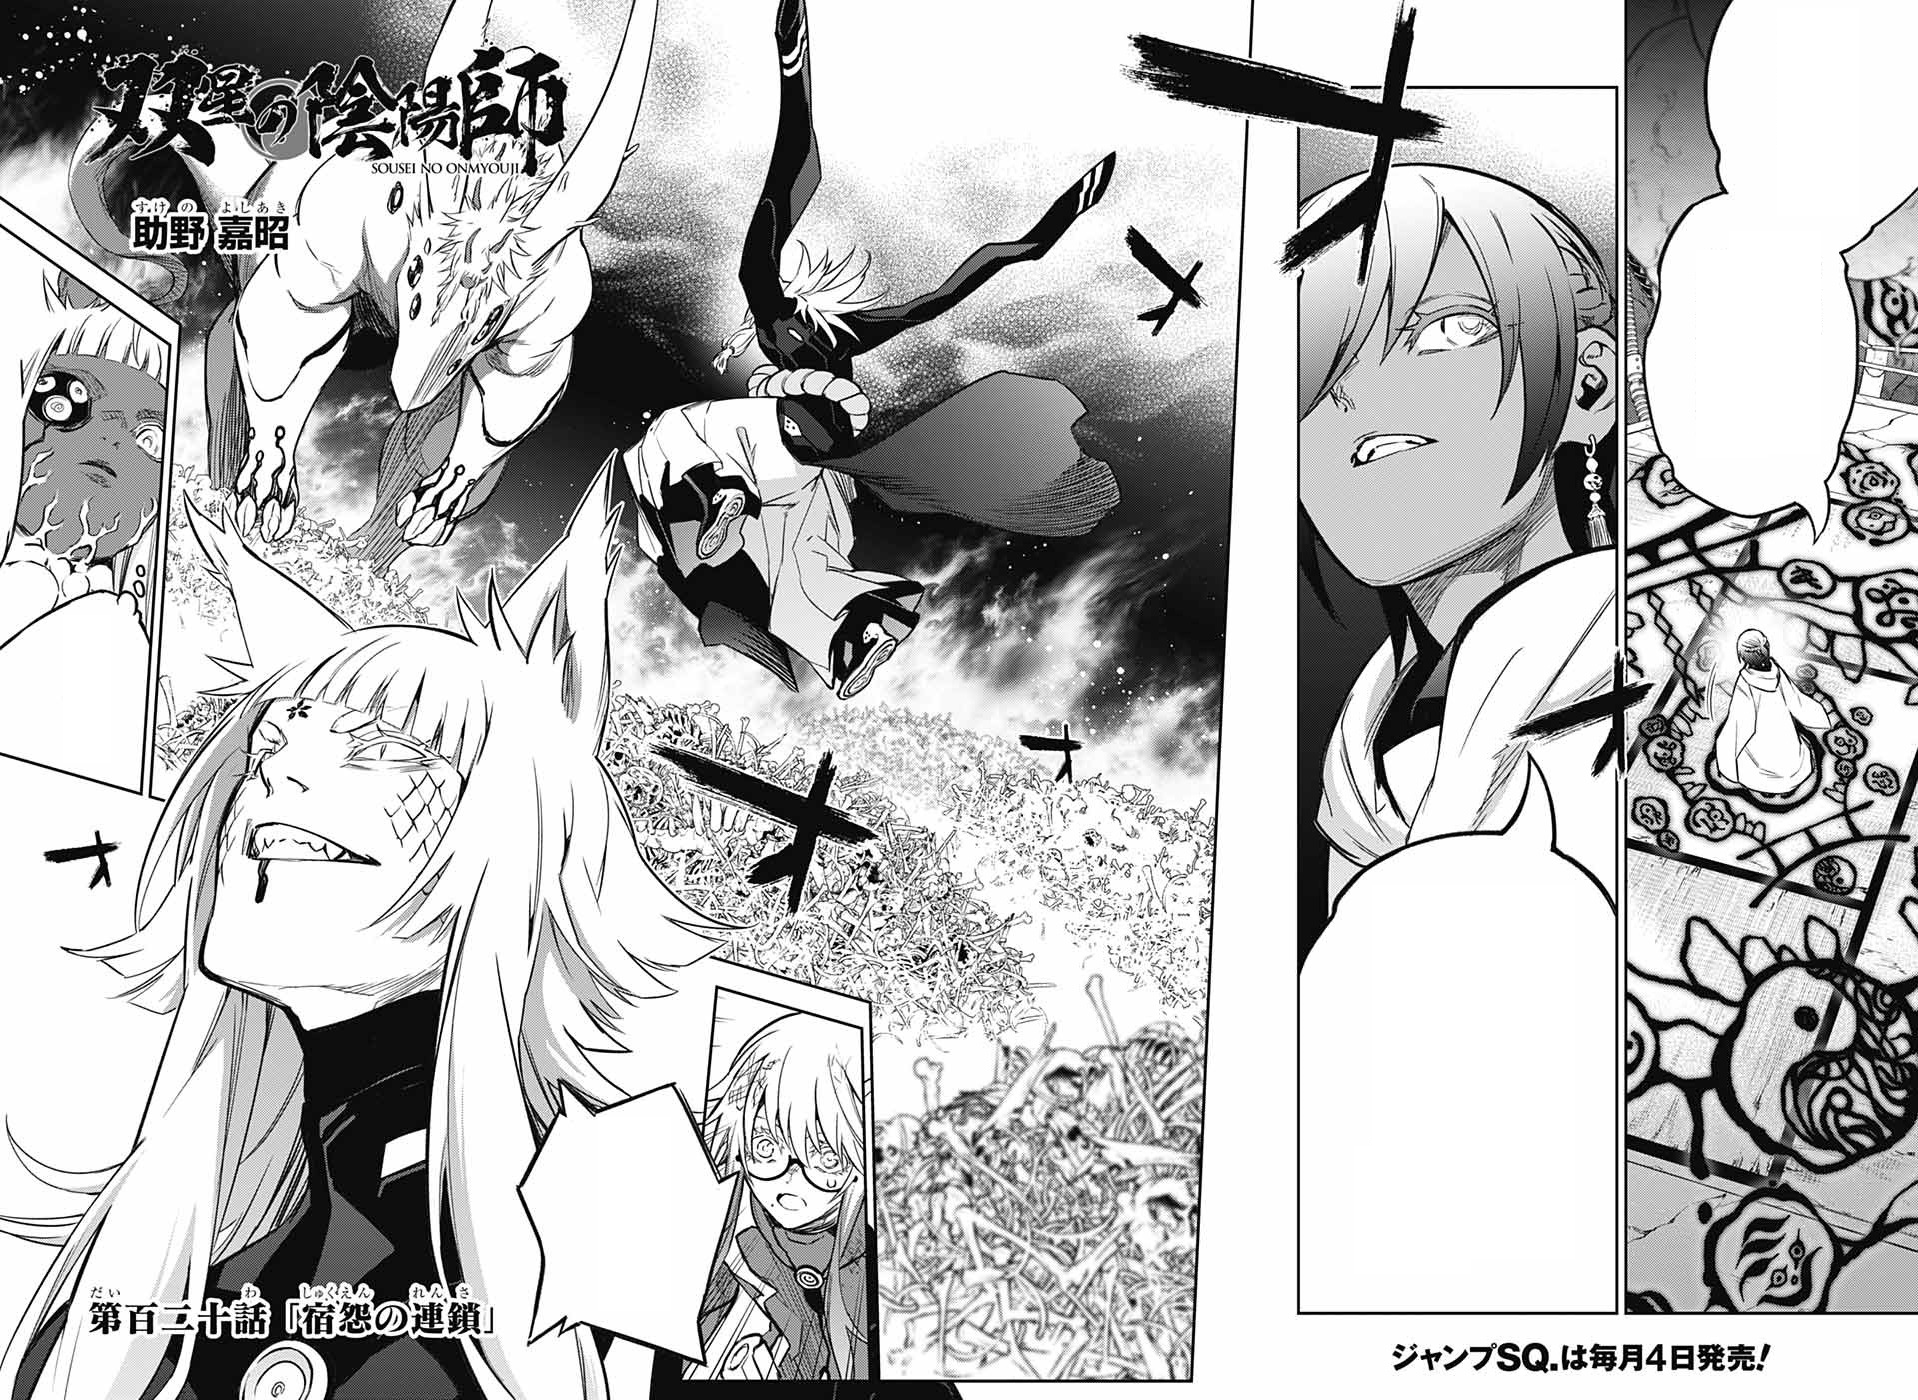 Chapter 13, Sousei no Onmyouji - Twin Star Exorcists Wikia